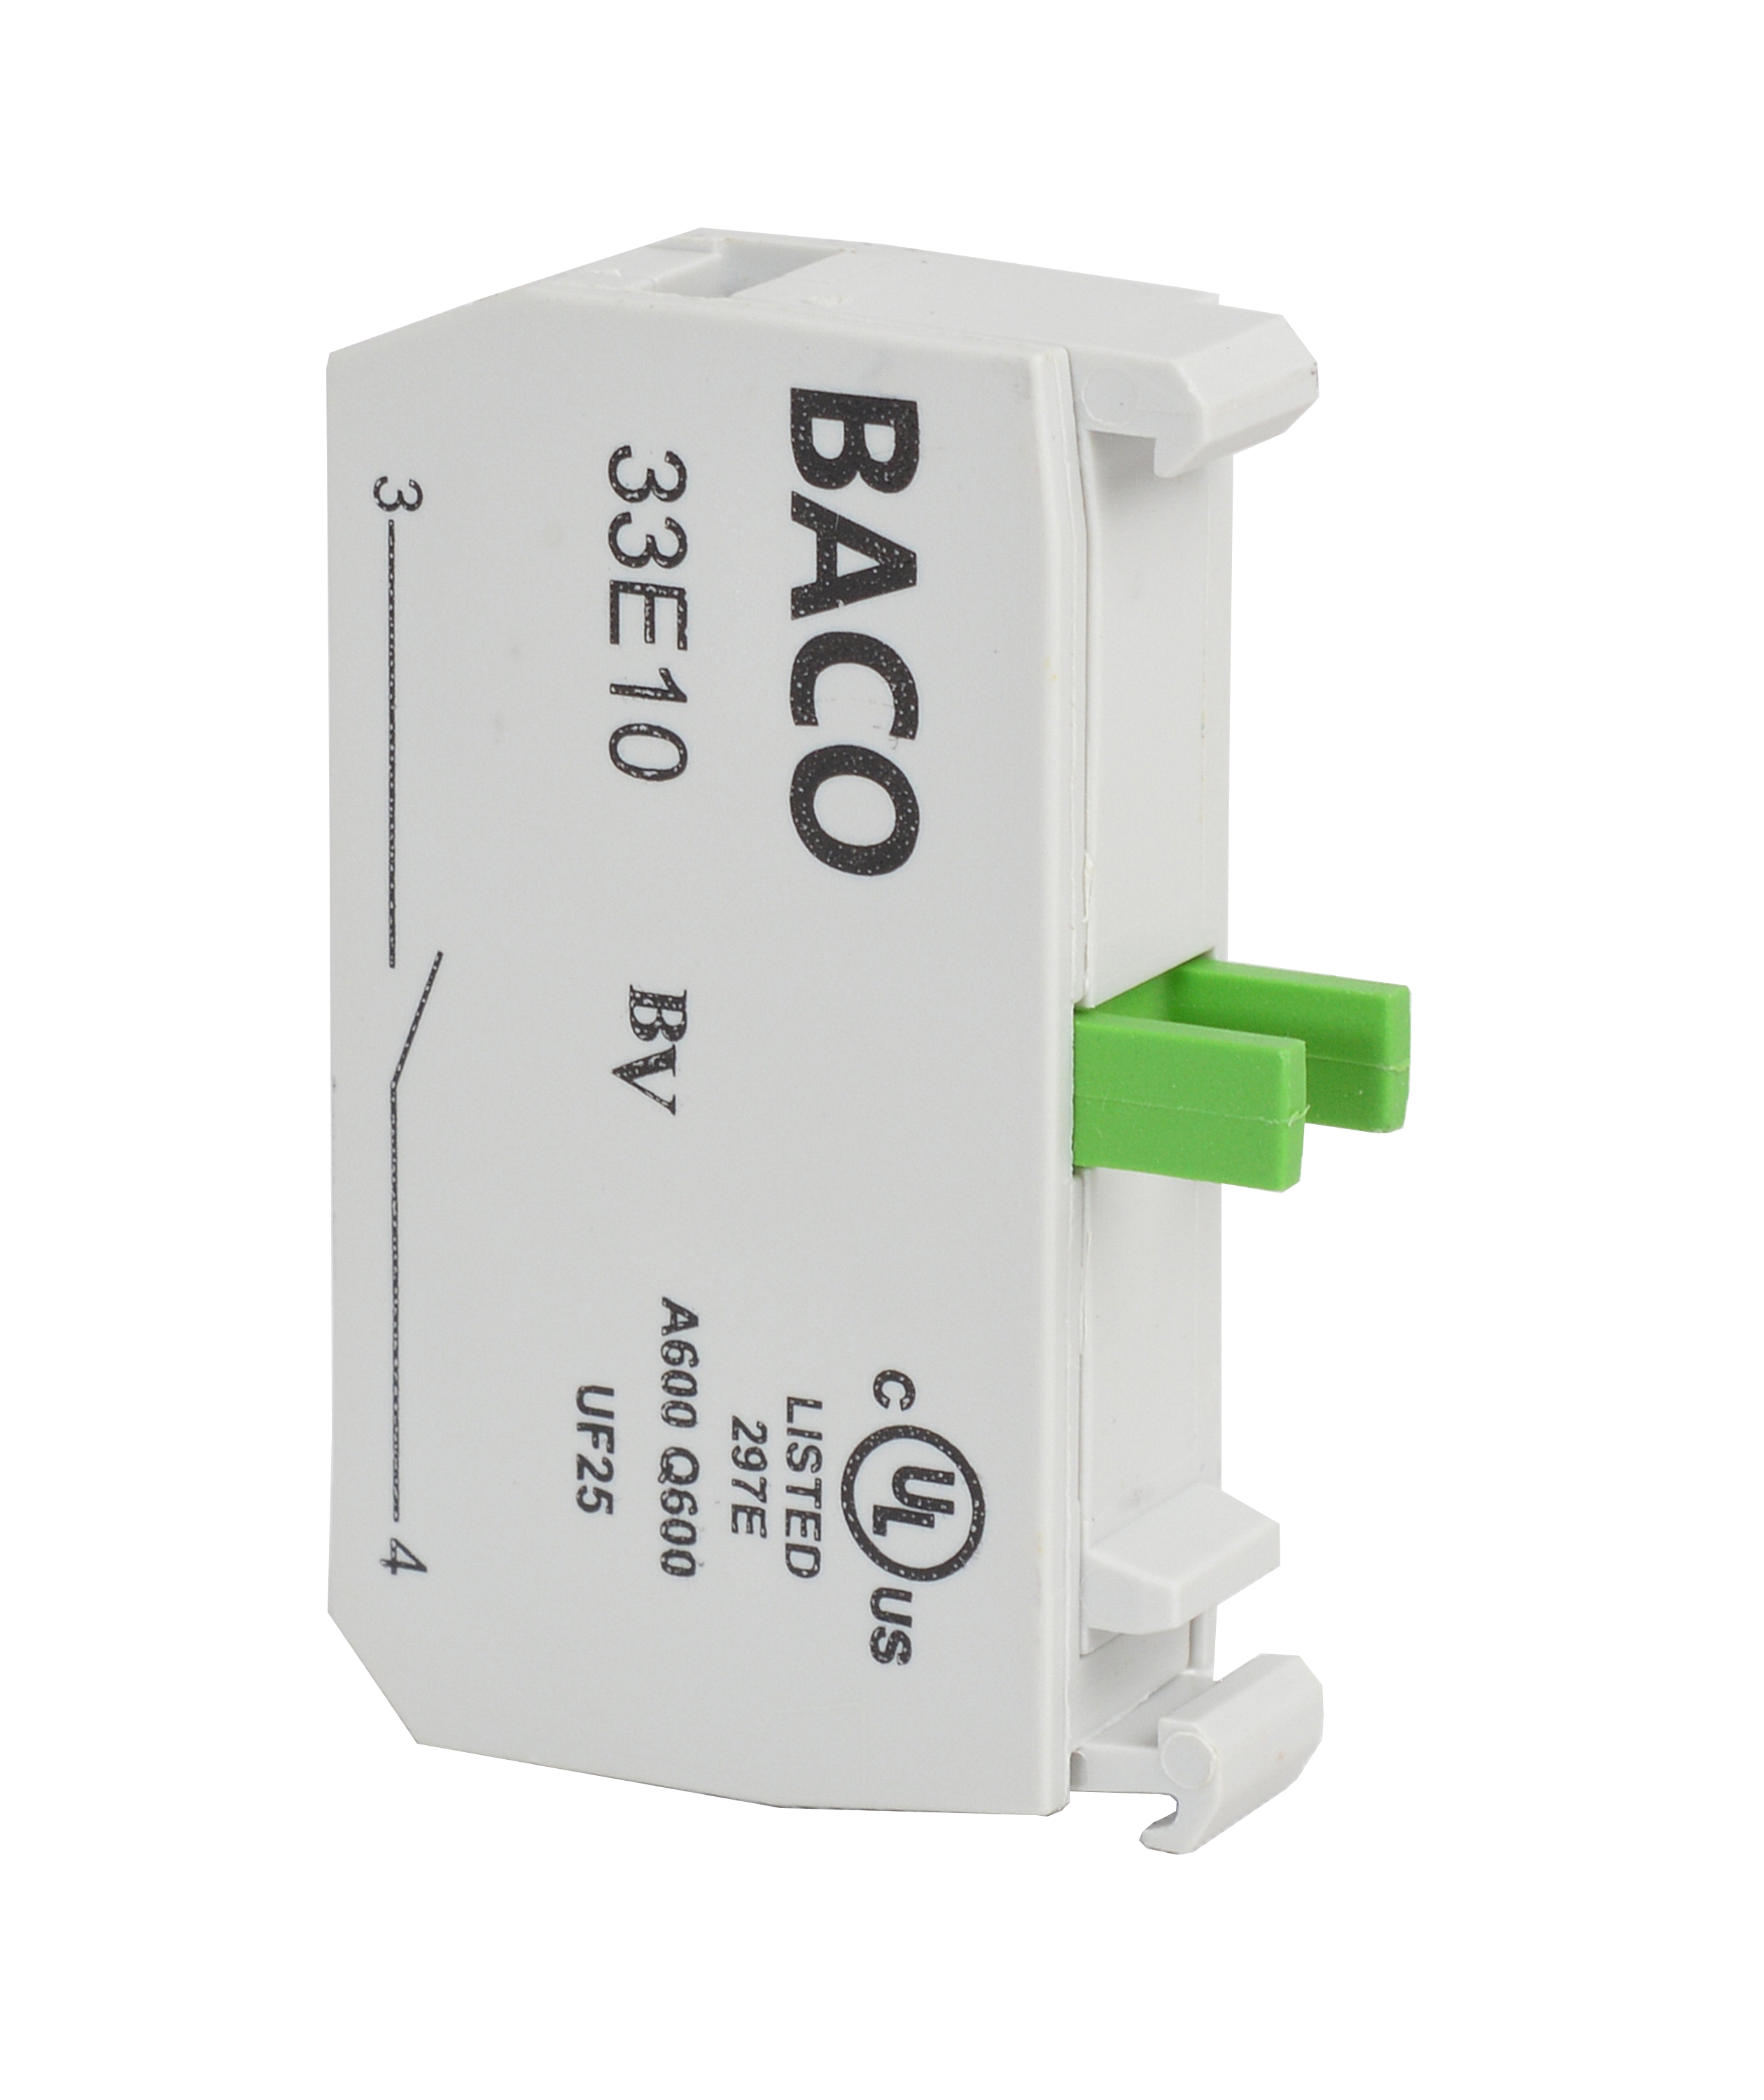 33E10 by Baco Controls, Inc.